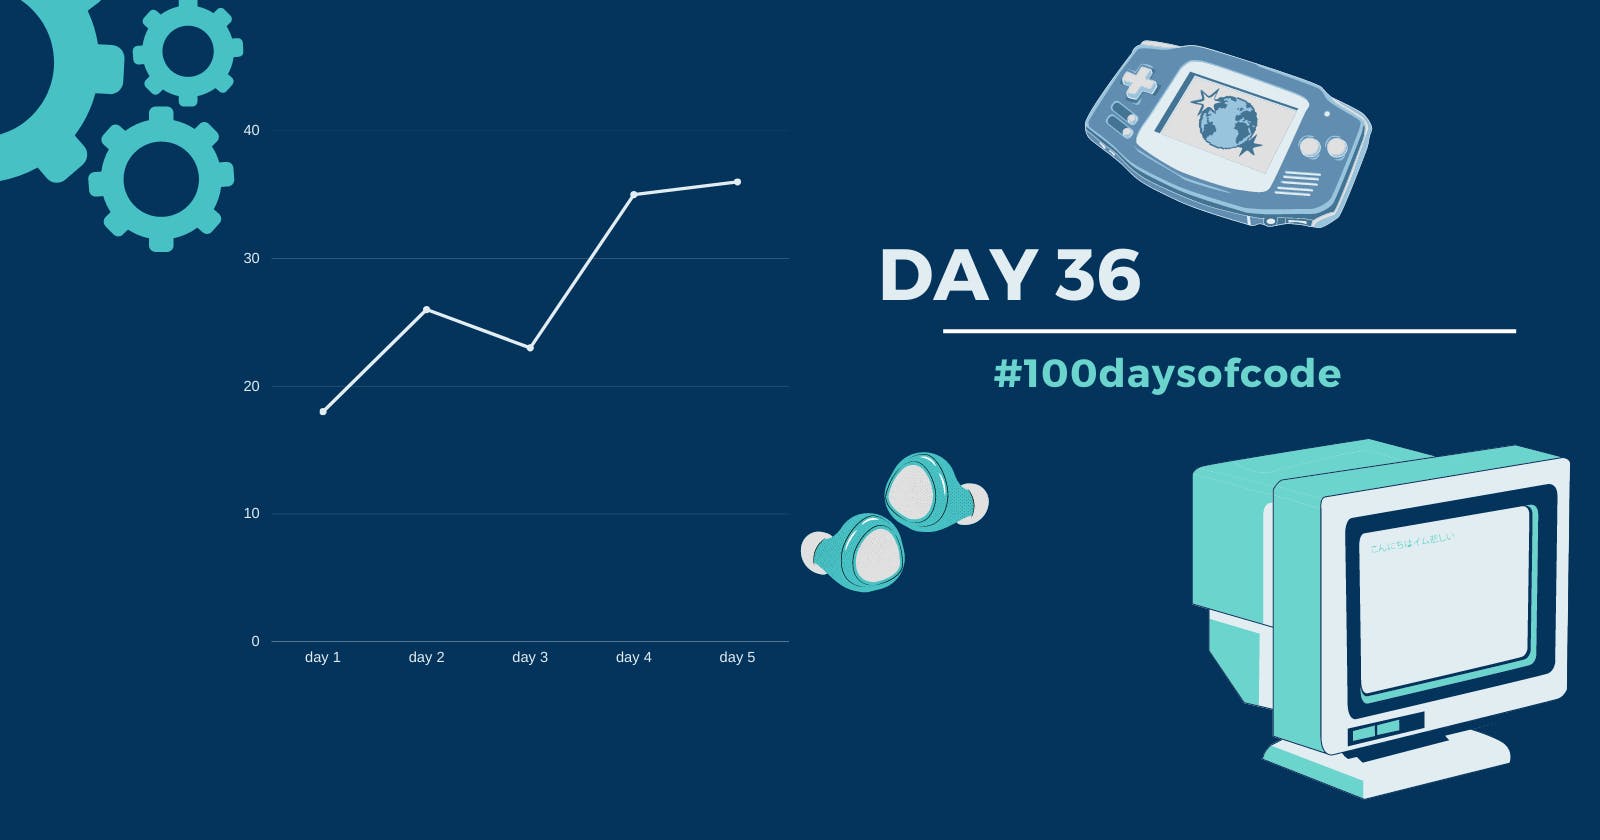 Day 36 in #100daysofcode challenge